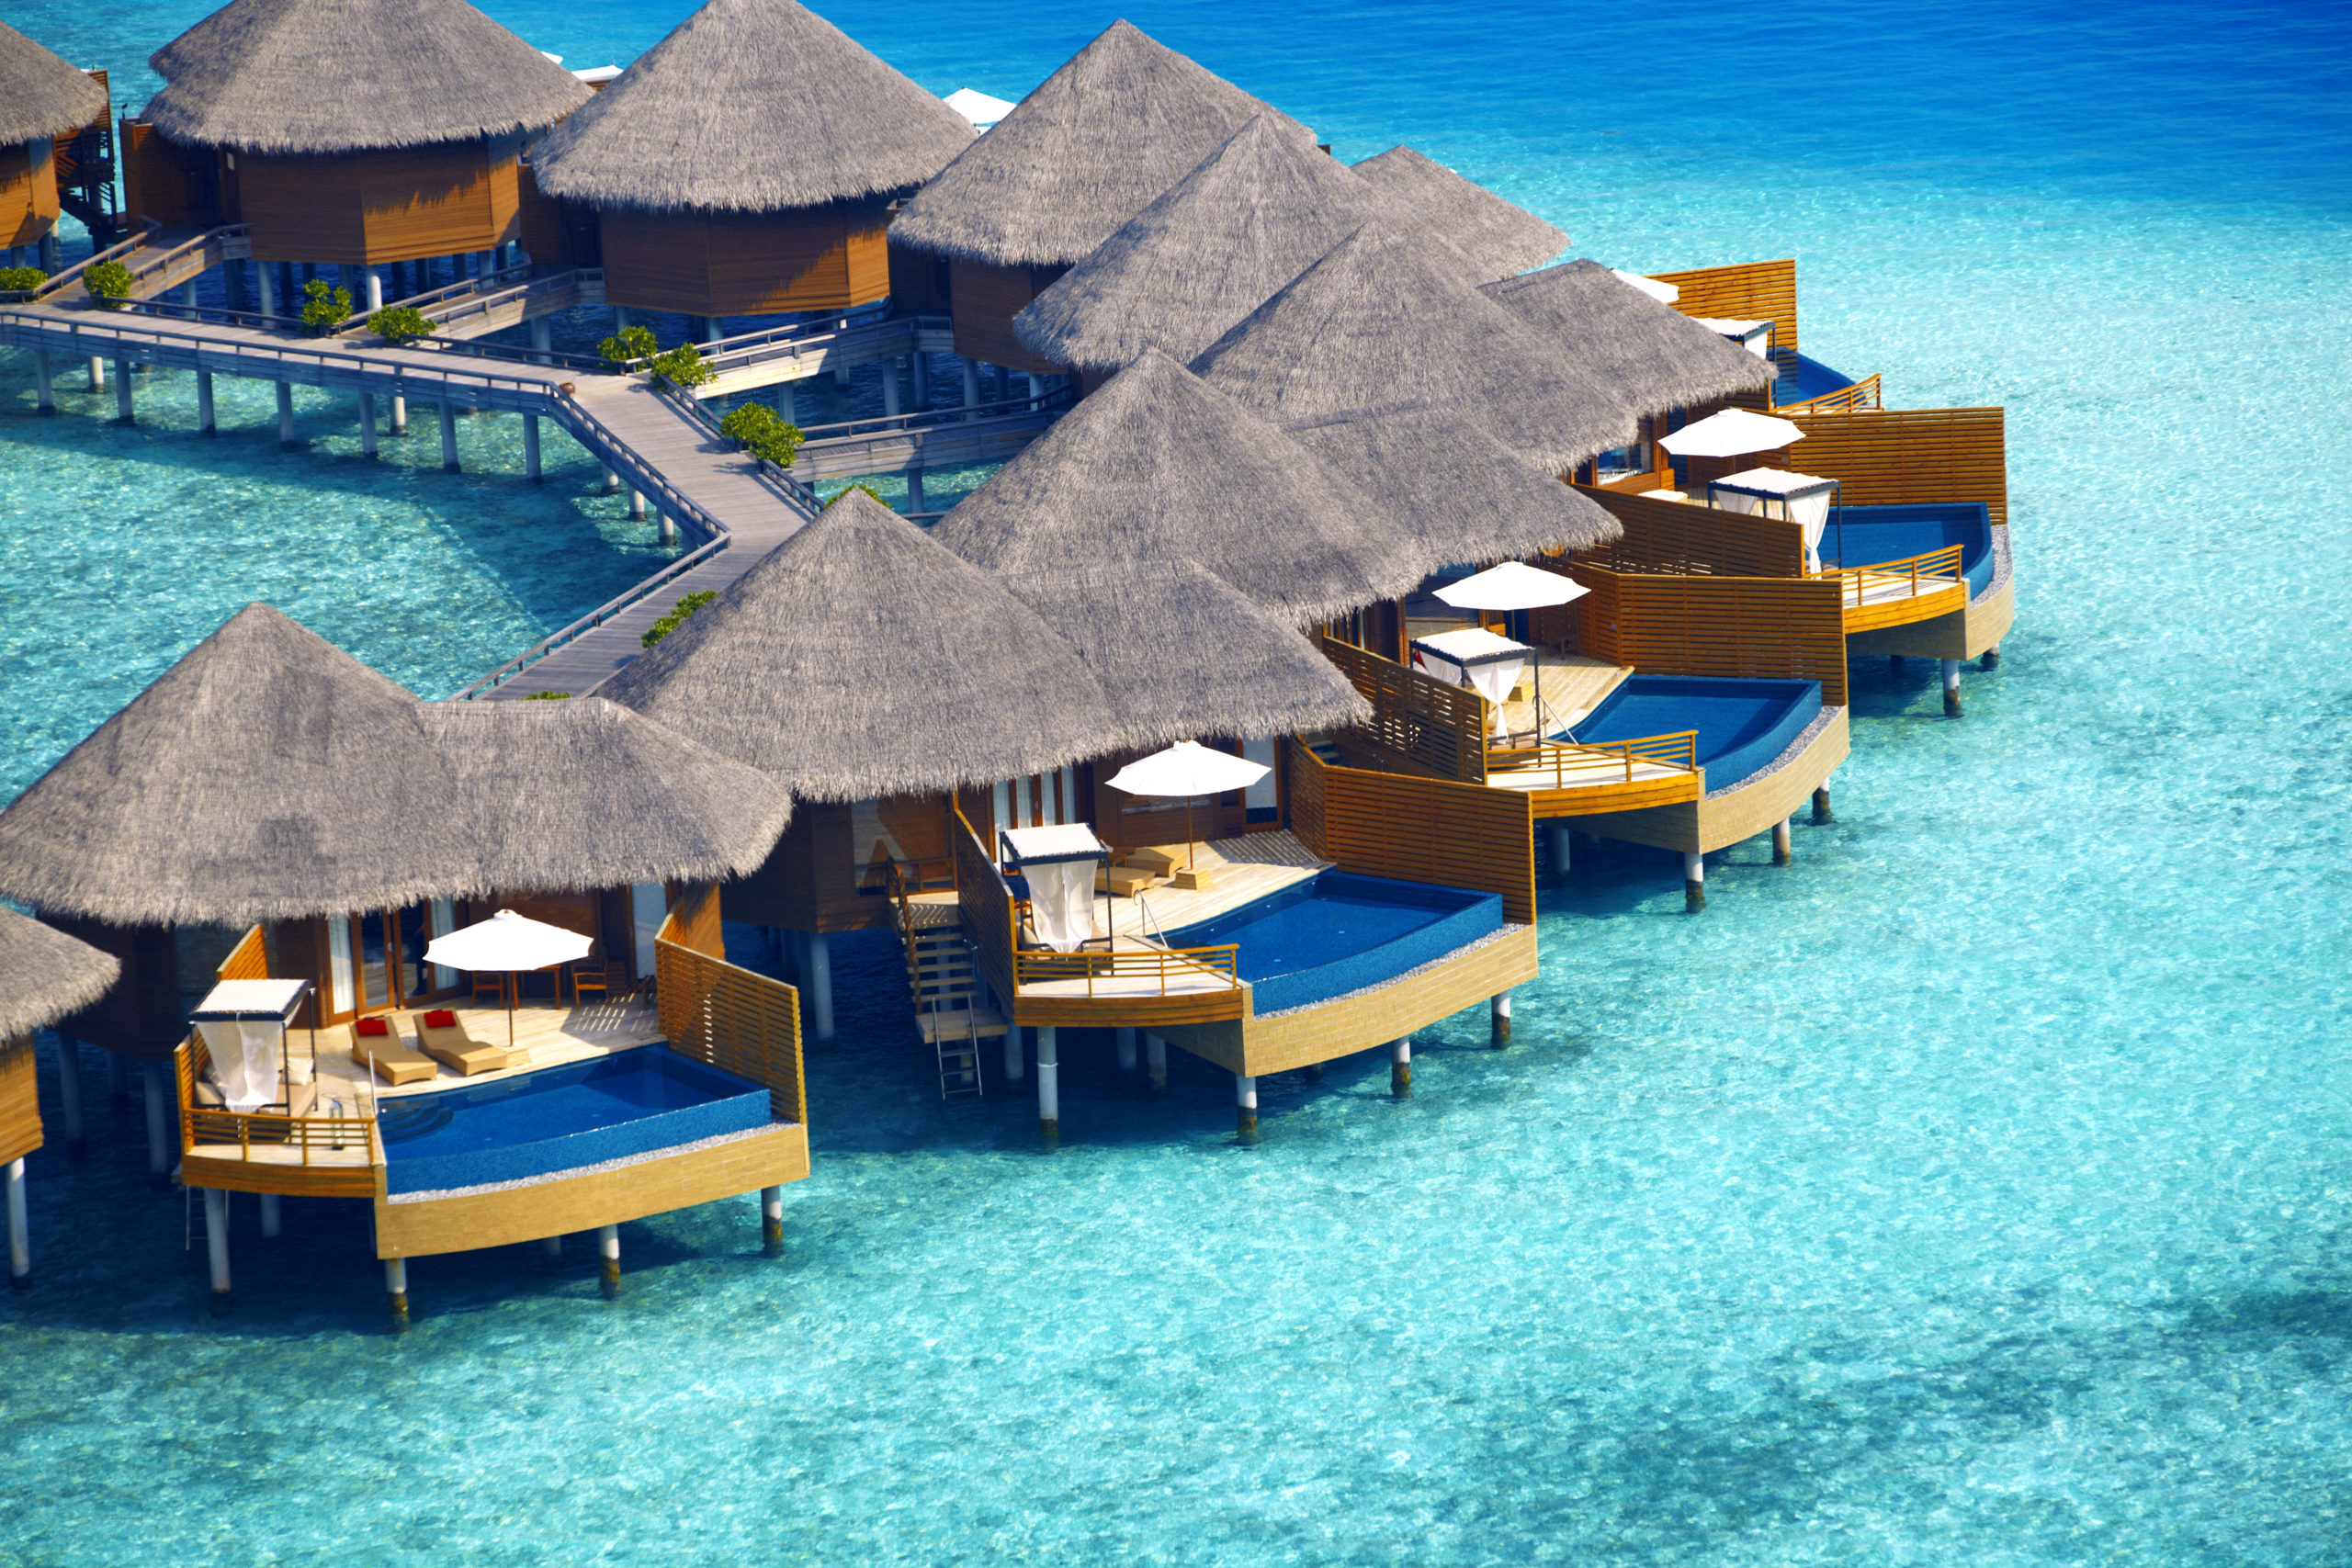 El hotel cuenta con 45 villas sobre la playa y 30 villas sobre el agua